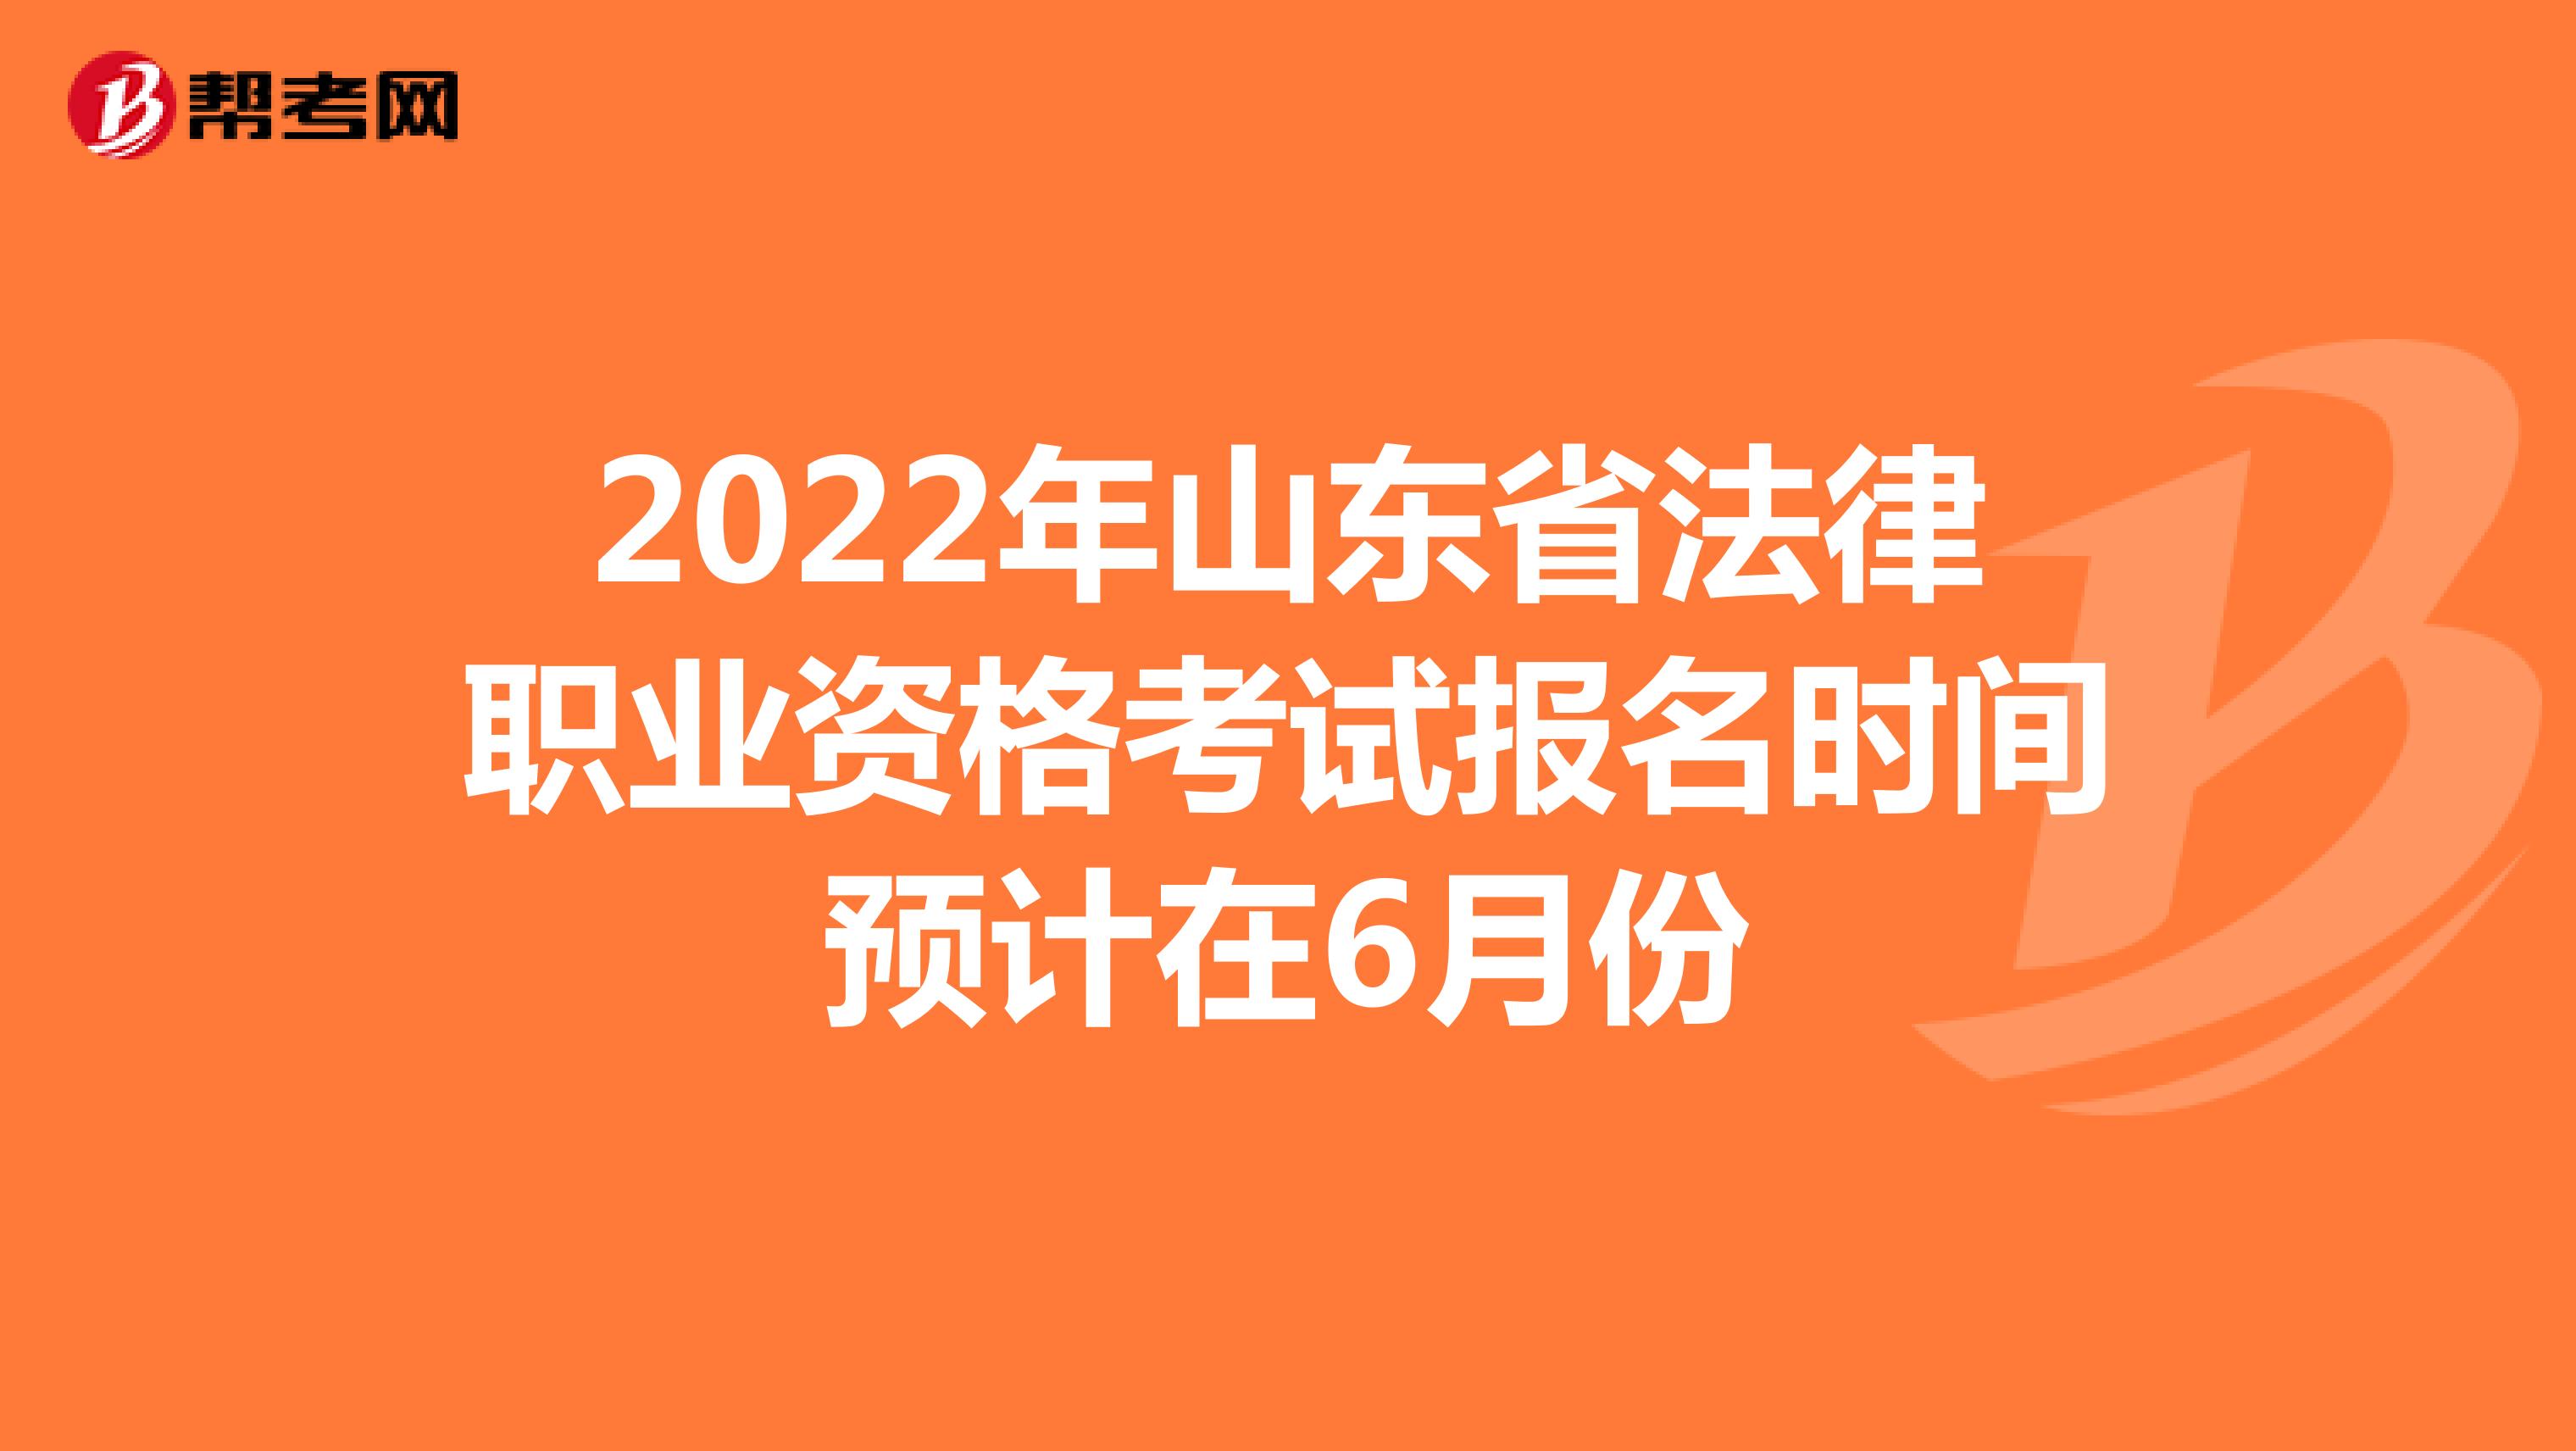 2022年山东省法律职业资格考试报名时间预计在6月份